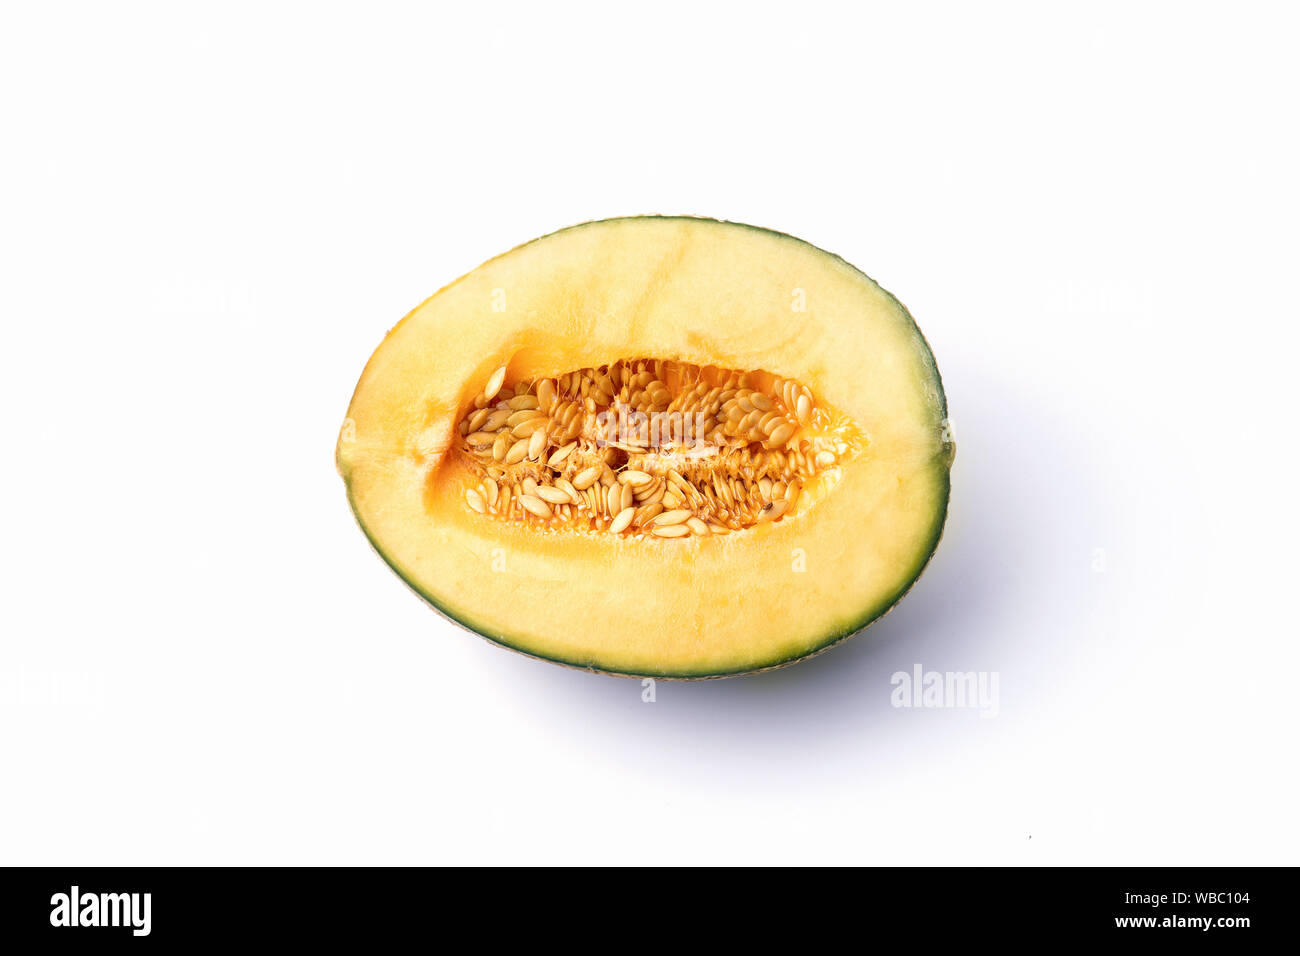 Schneiden natürliche Melone, ein gesundes Produkt voller Vitamine. Für Werbung veganes Essen und Lebensstil. Stockfoto